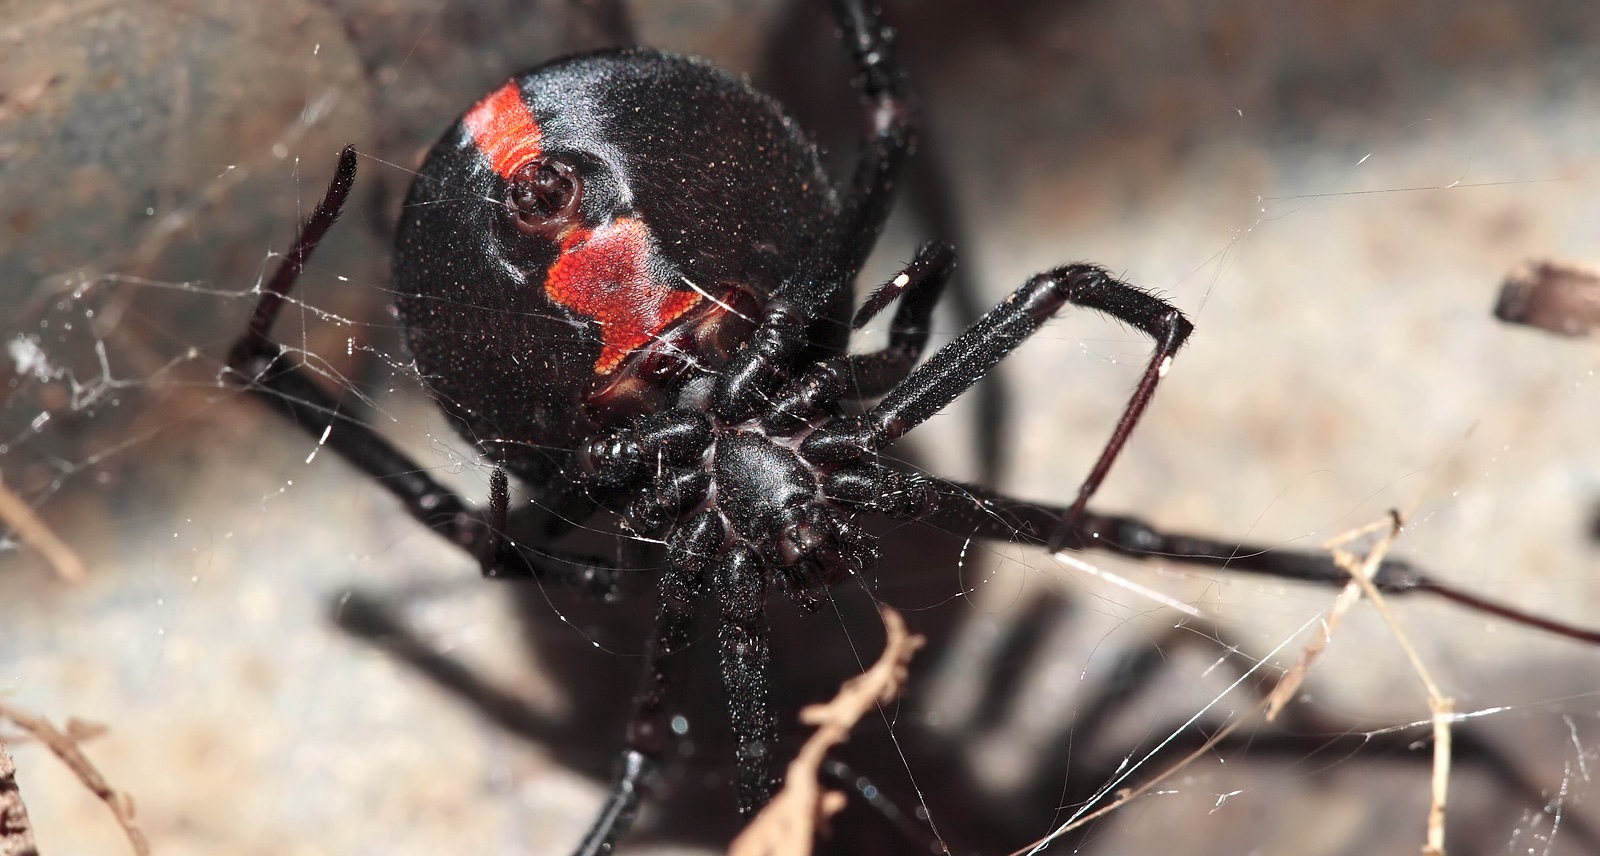 Australian Man's dong bitten again by redback spider